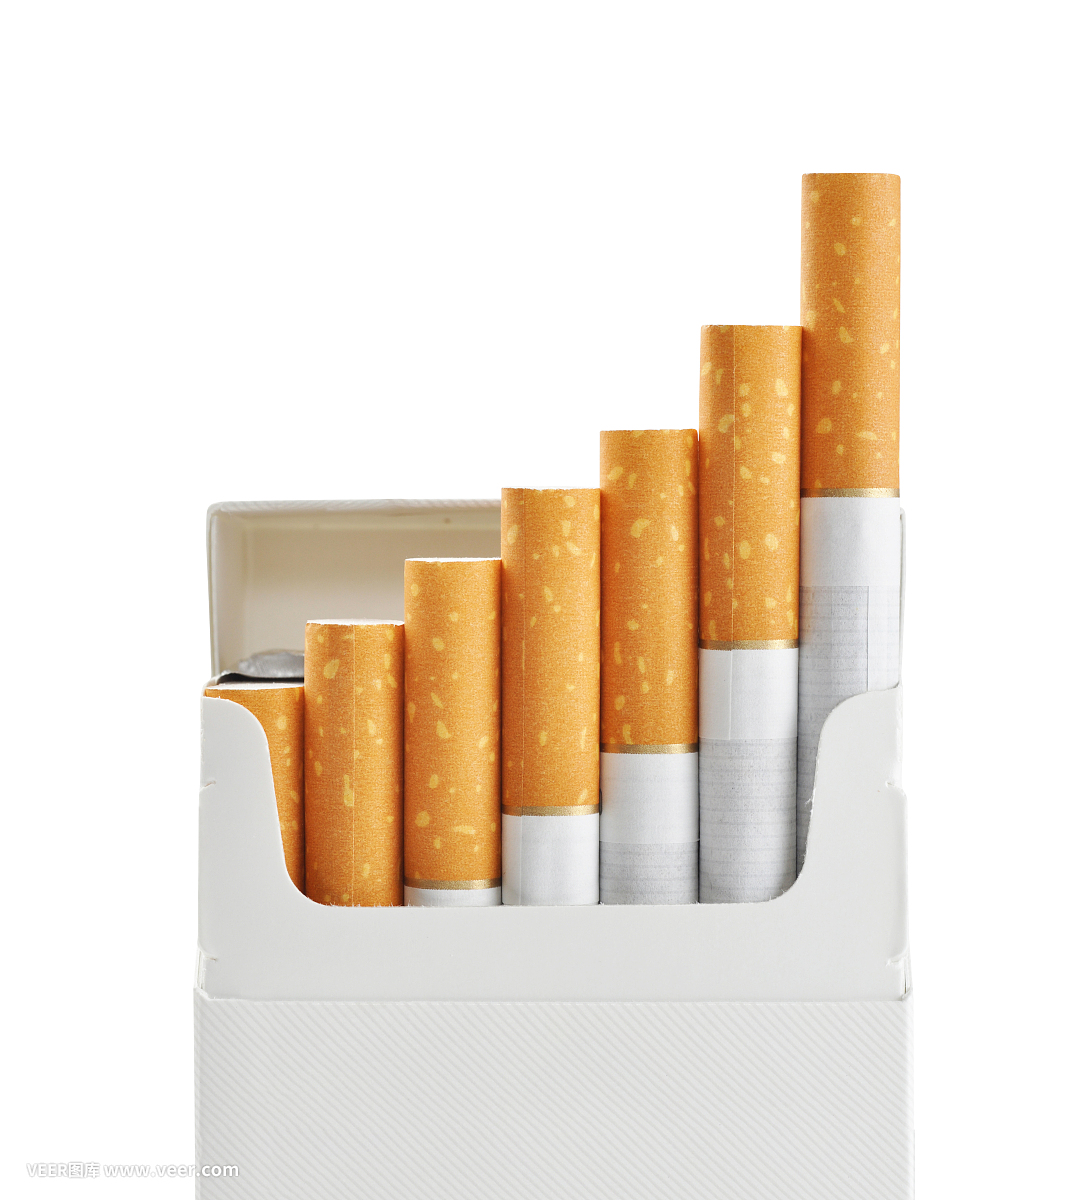 cmc used in  cigarettes